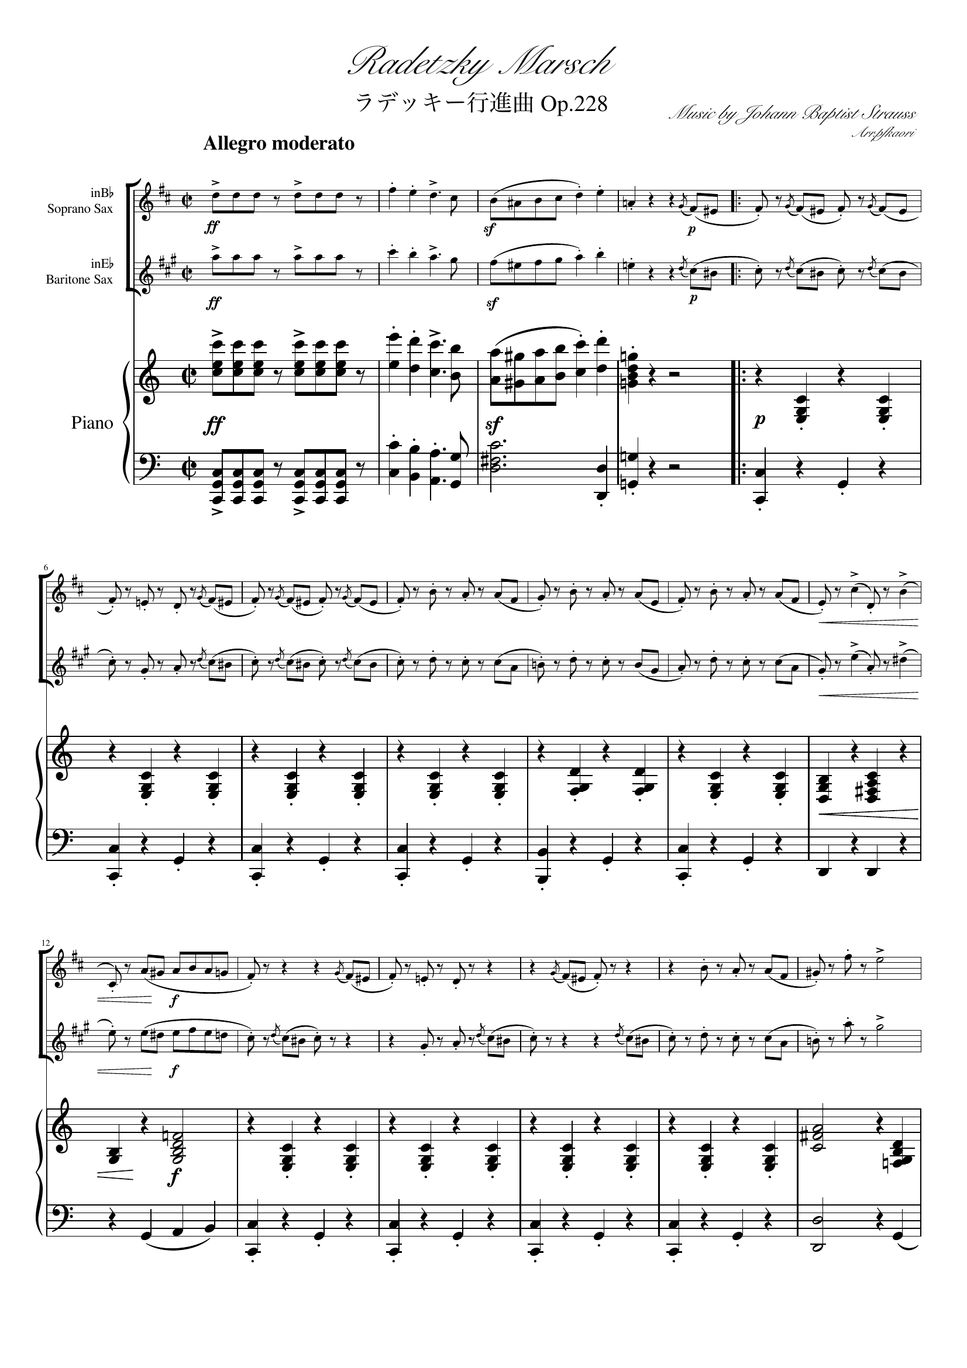 ヨハンシュトラウス1世 - ラデッキ行進曲 (C・ピアノトリオ/ソプラノサックス&バリトンサック) by pfkaori